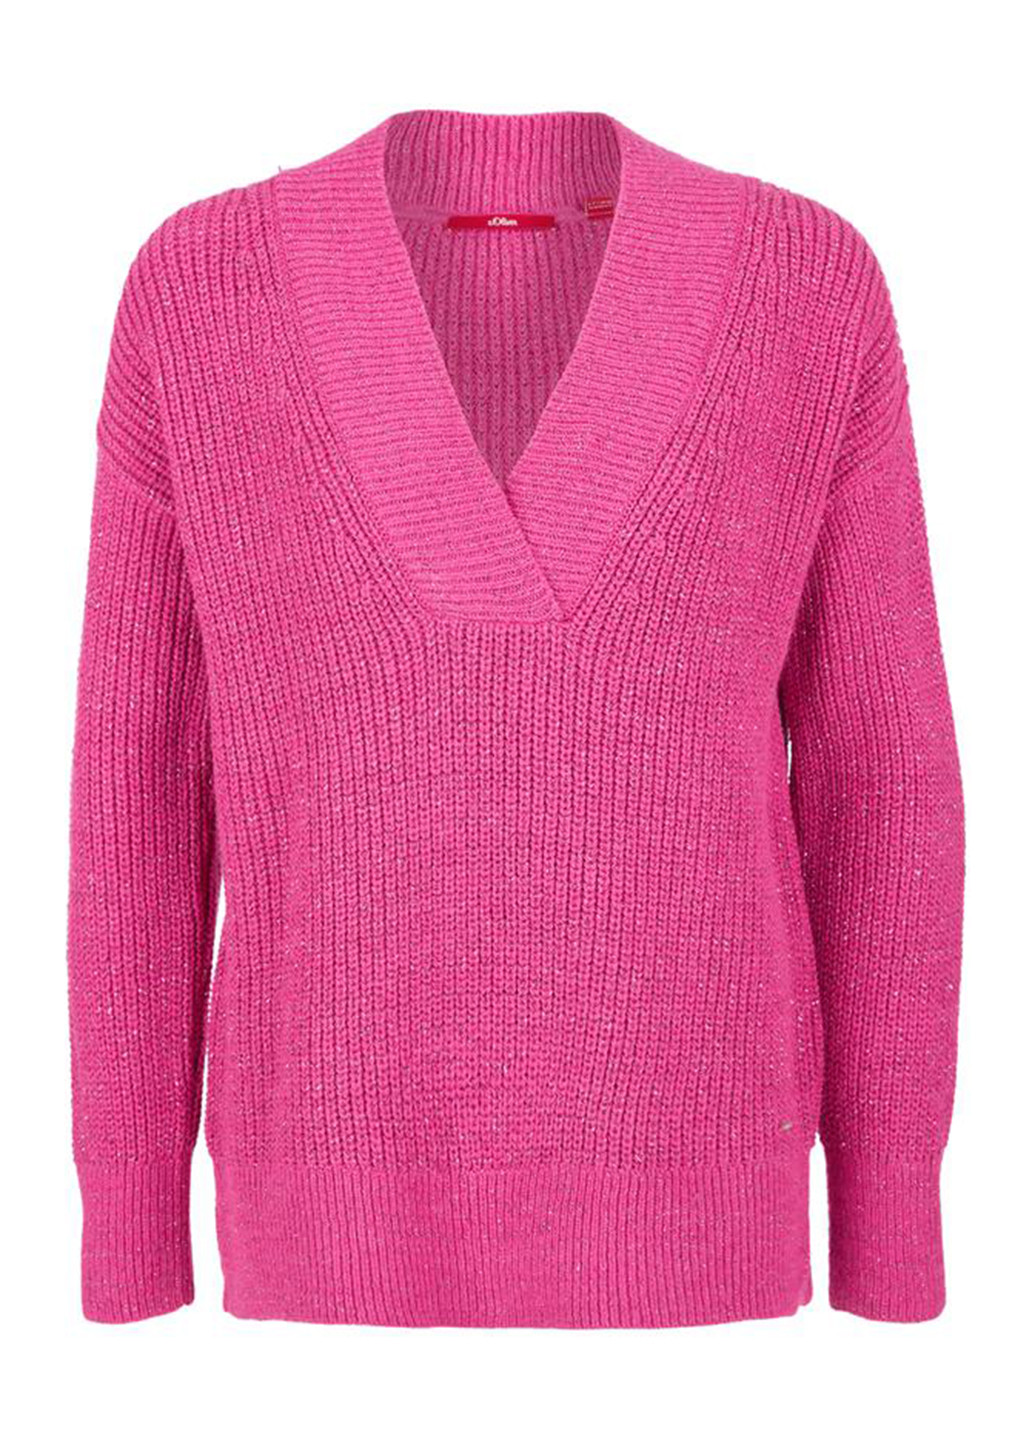 Розовый демисезонный пуловер пуловер S.Oliver